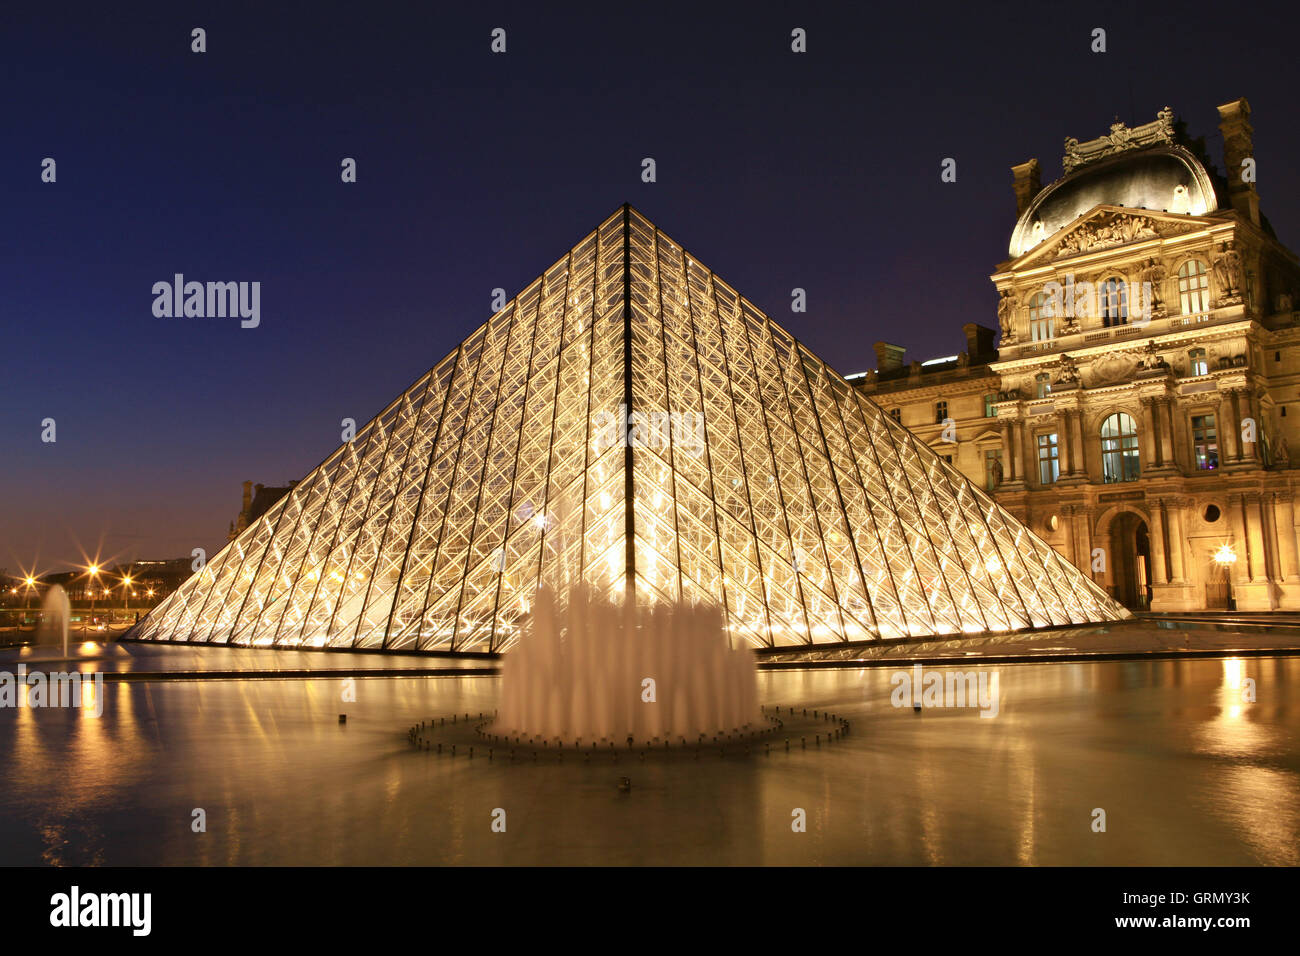 París, Francia - Marzo 20,2013: Museo del Louvre al atardecer el 20 de marzo de 2013 en Paris Foto de stock